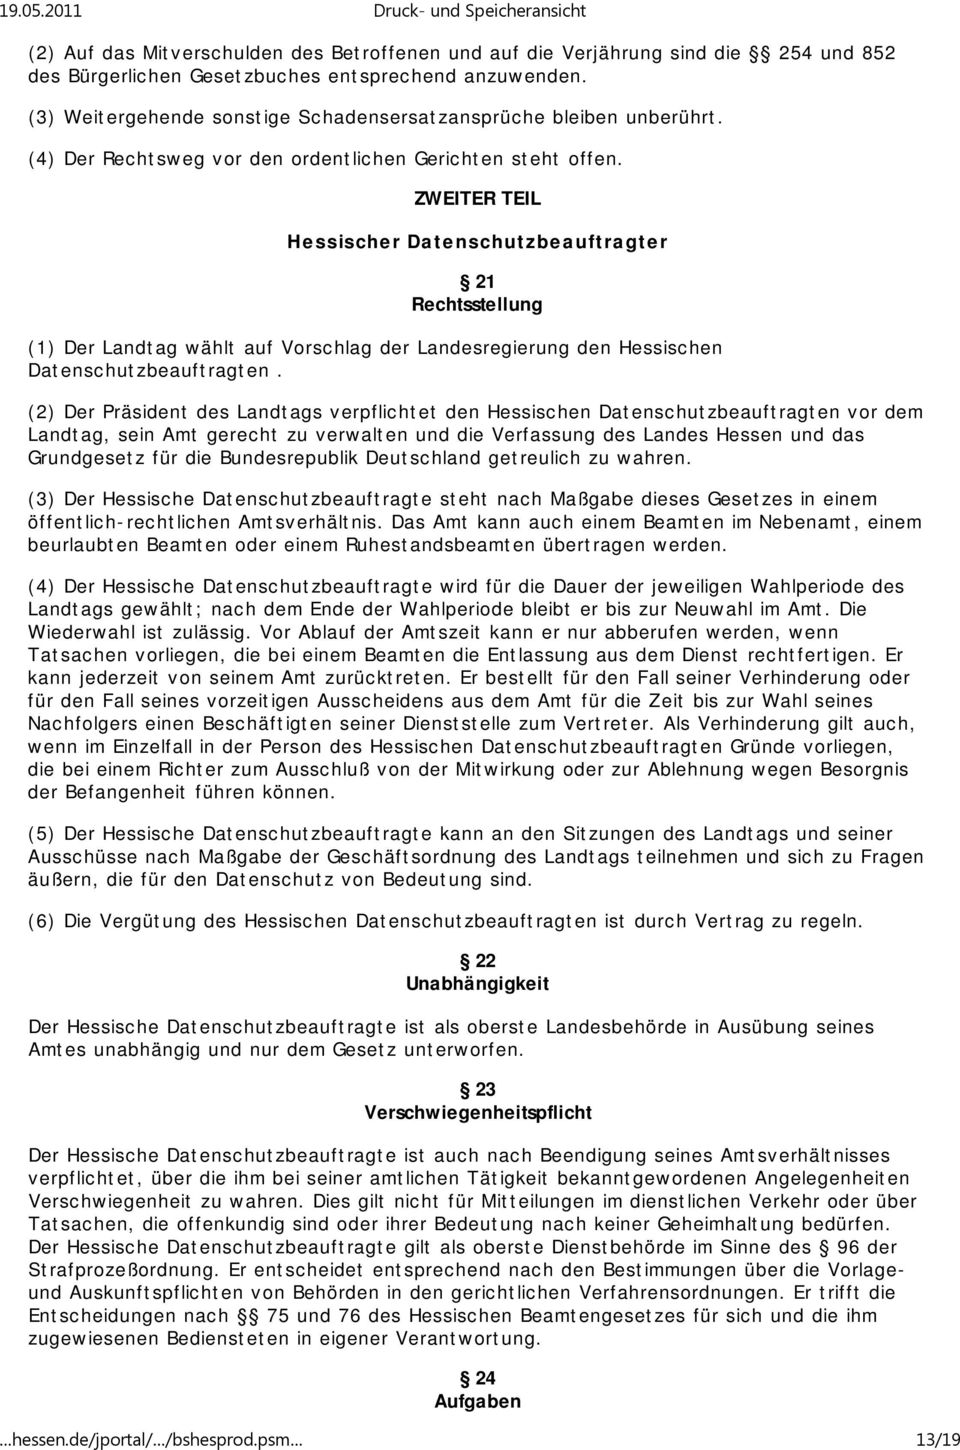 ZWEITER TEIL Hessischer Datenschutzbeauftragter 21 Rechtsstellung (1) Der Landtag wählt auf Vorschlag der Landesregierung den Hessischen Datenschutzbeauftragten.